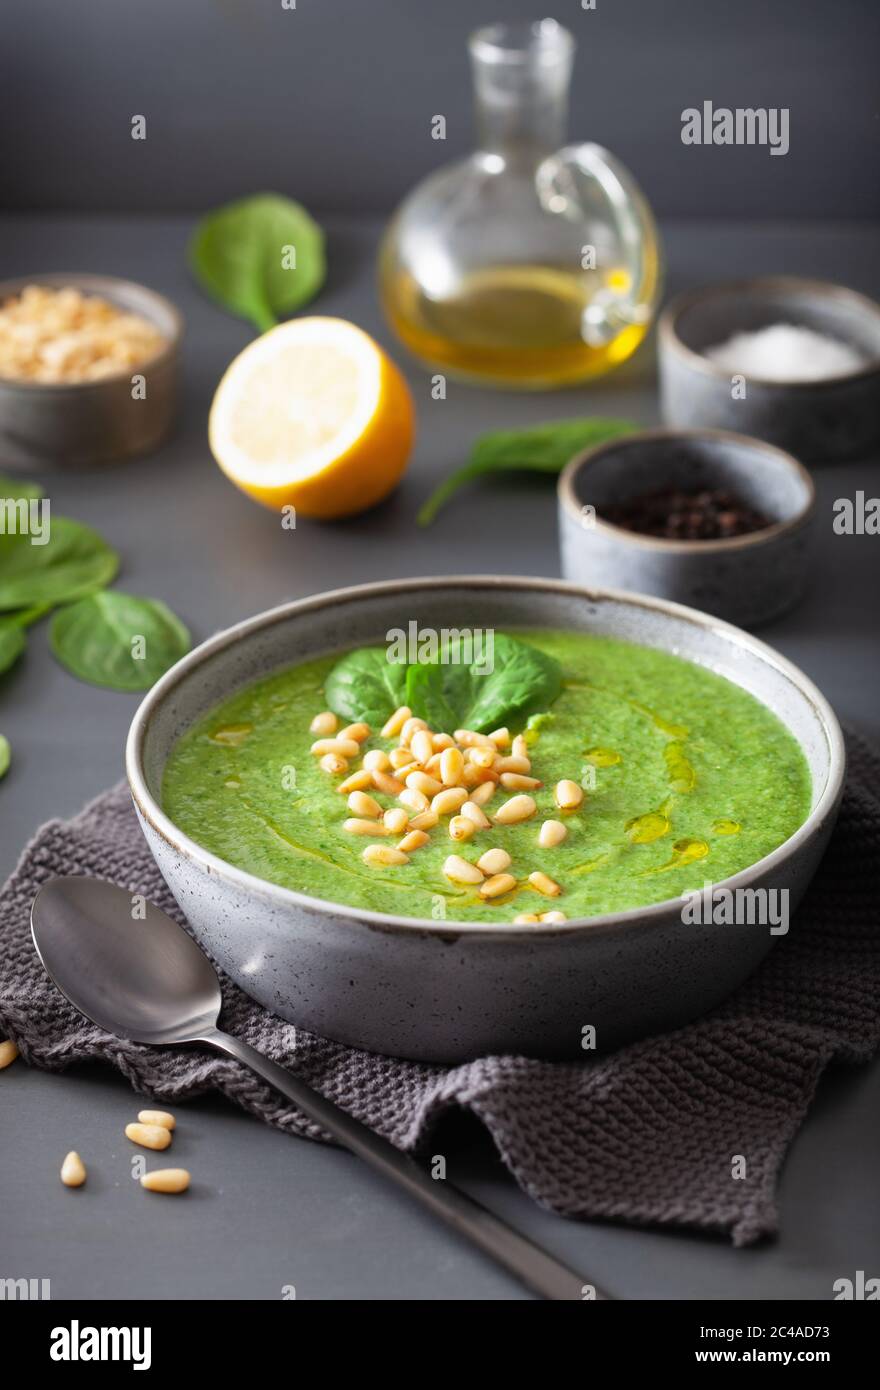 Chou-fleur soupe épinards crémeux vert sur fond gris Banque D'Images